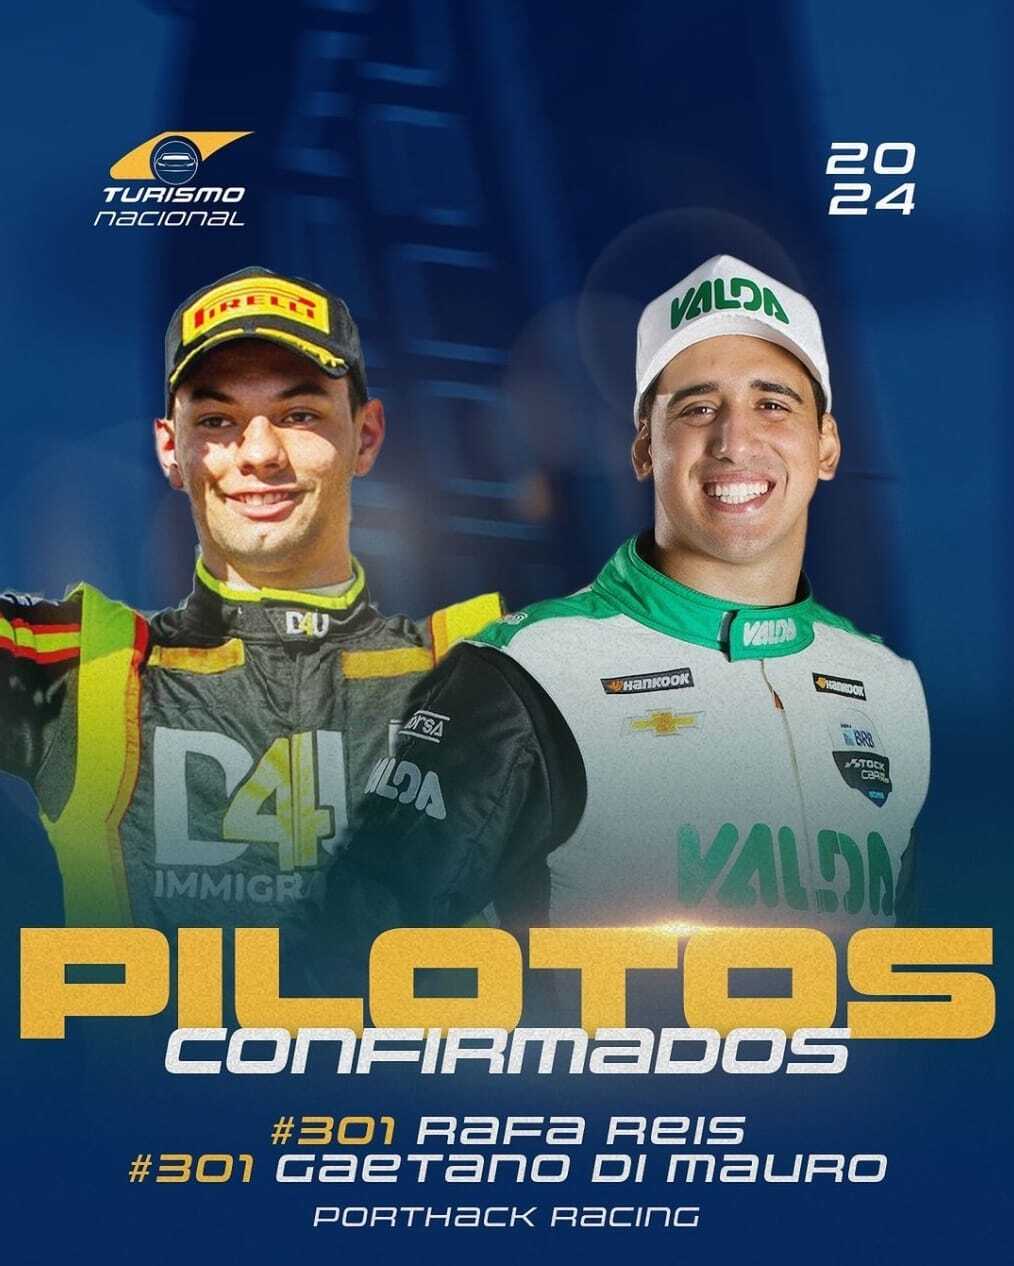 Multicampeã no kart, equipe Car Racing estreia na Turismo Nacional com Rafael Reis